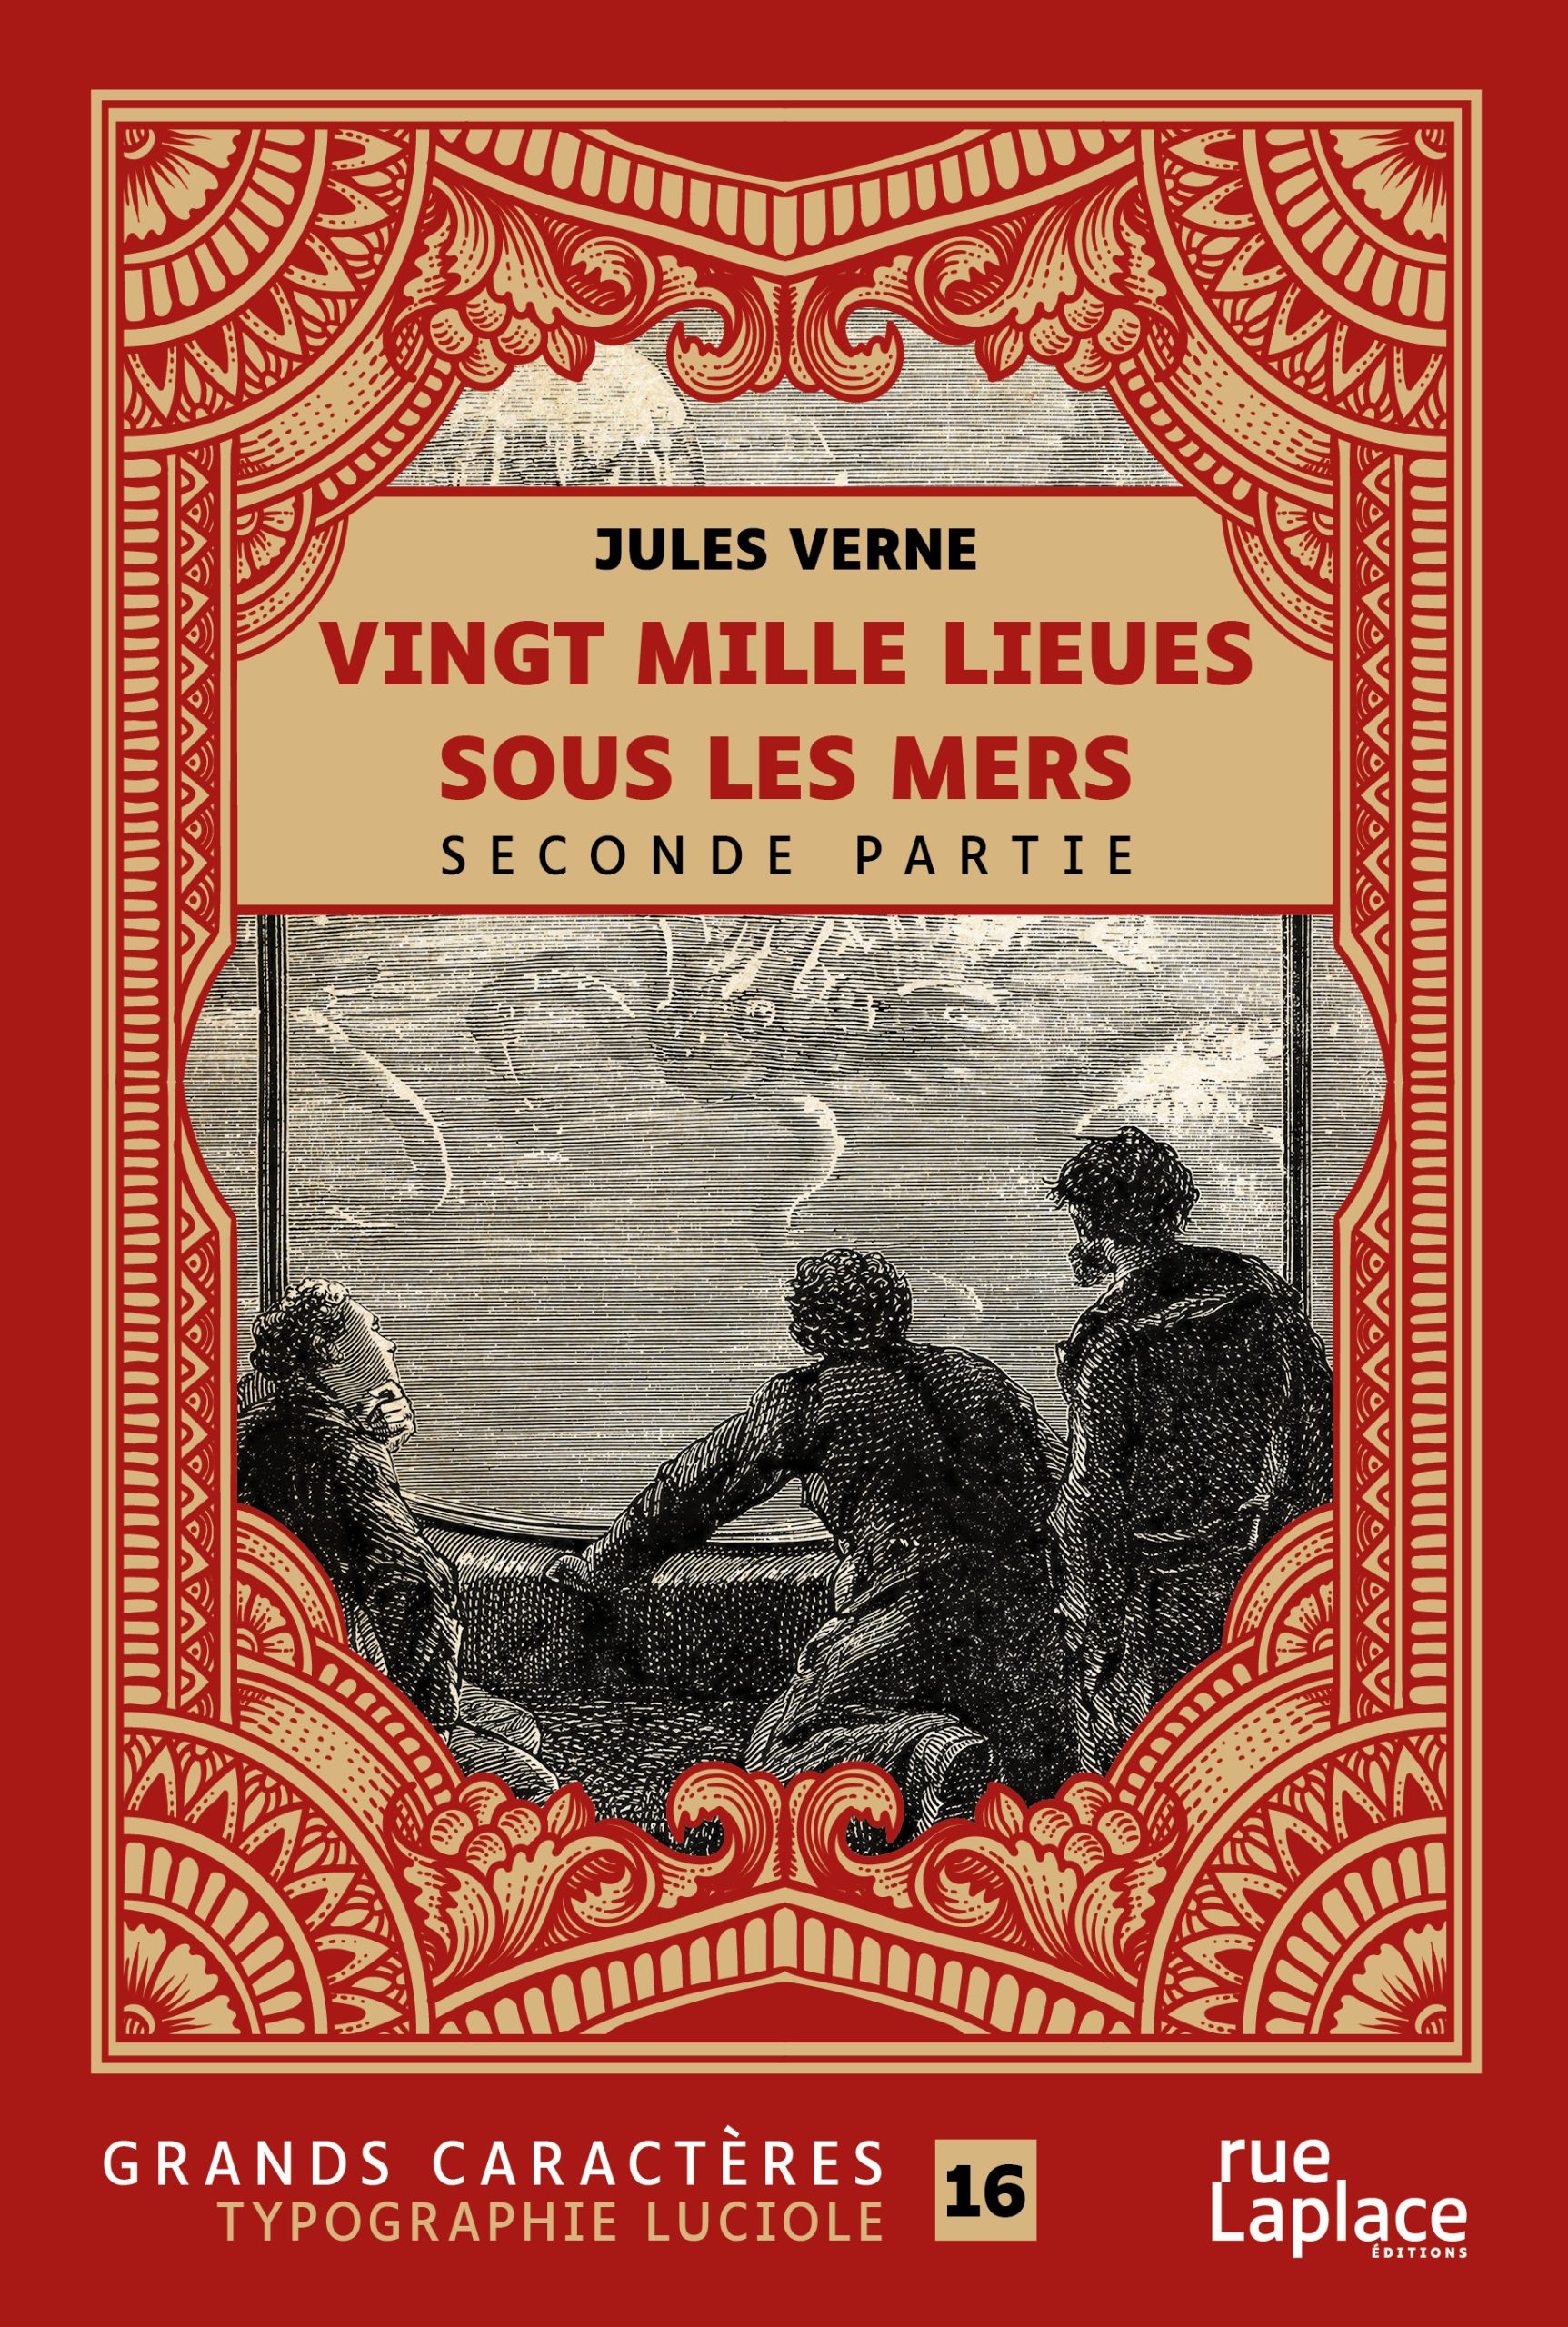 Couverture du livre en grands caractères - gros caractères - Vingt mille lieues sous les mers de Jules Verne